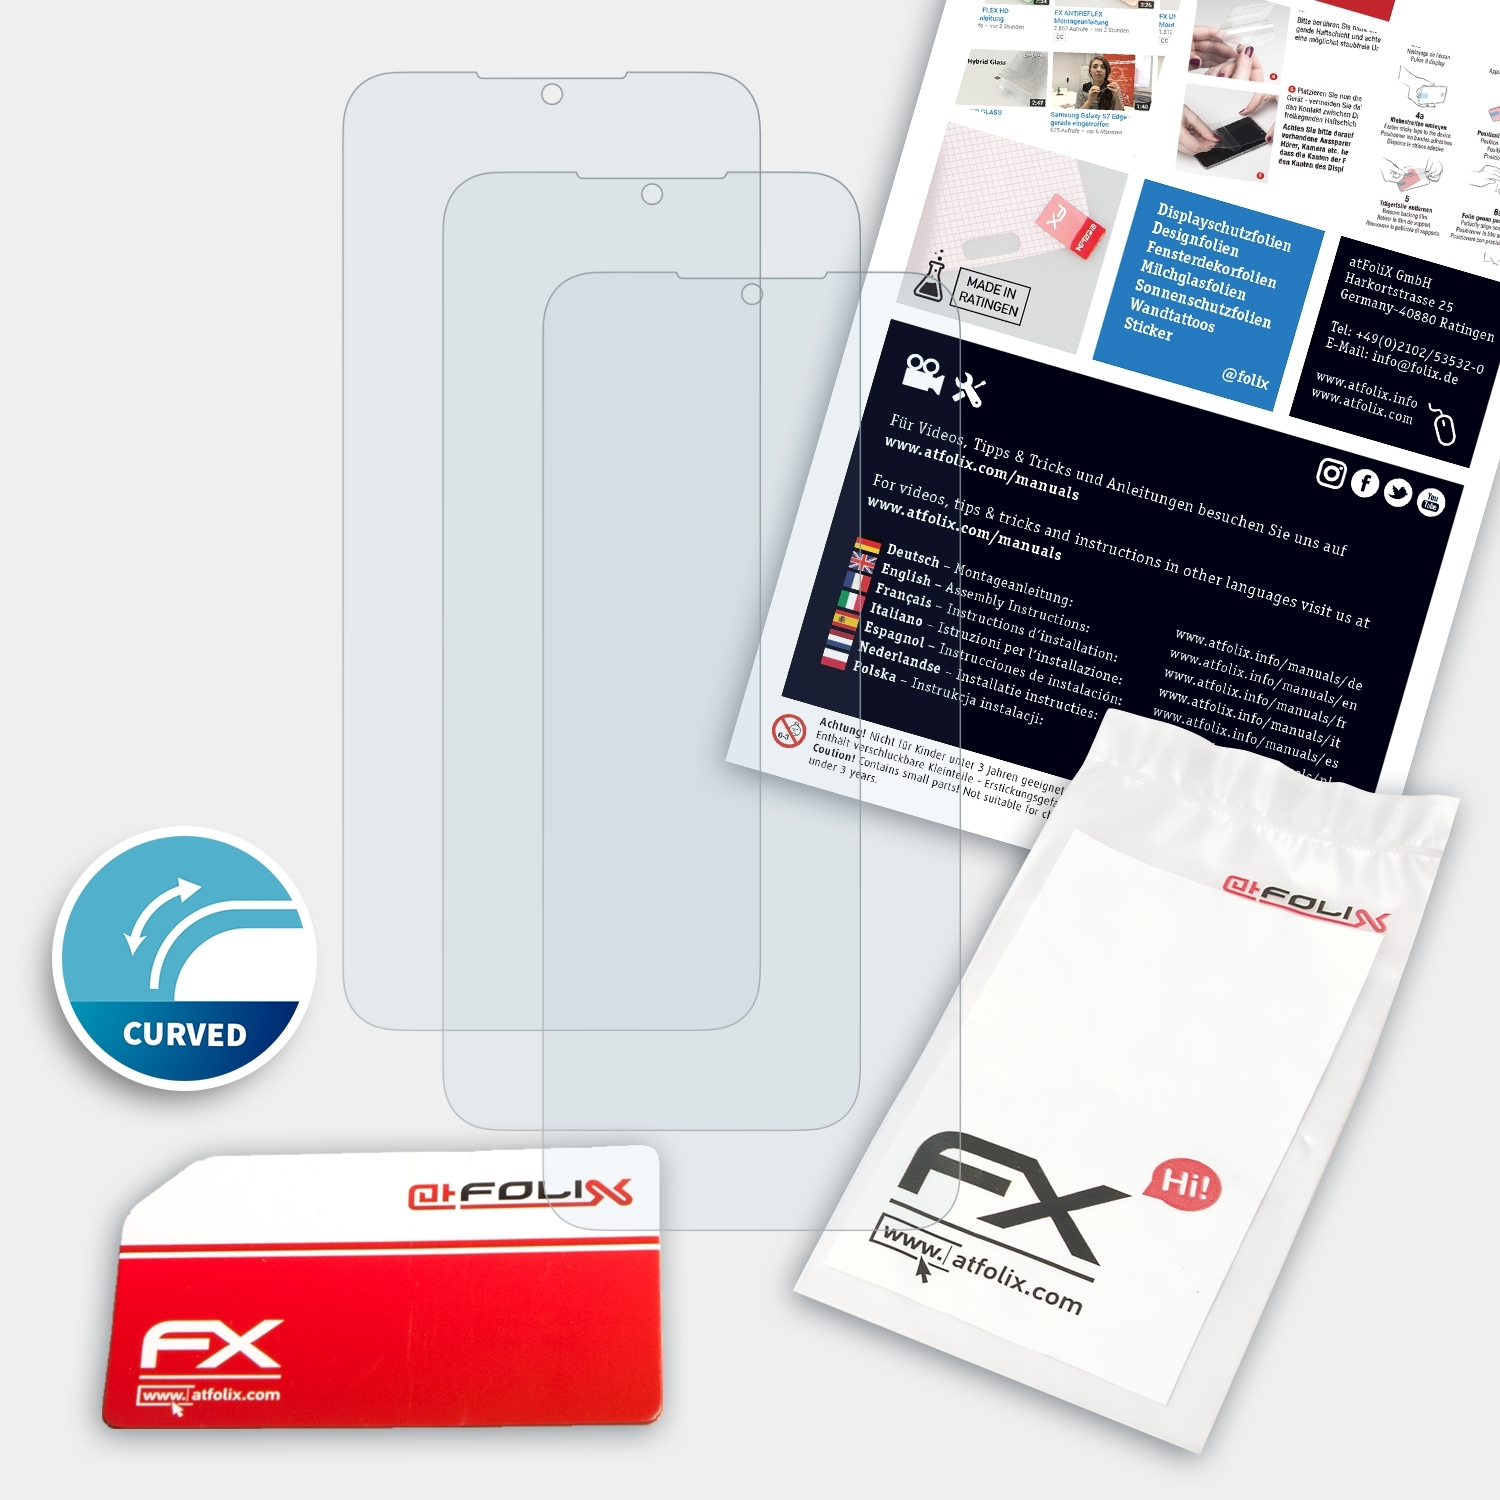 G50) Displayschutz(für FX-ActiFleX 3x Nokia ATFOLIX